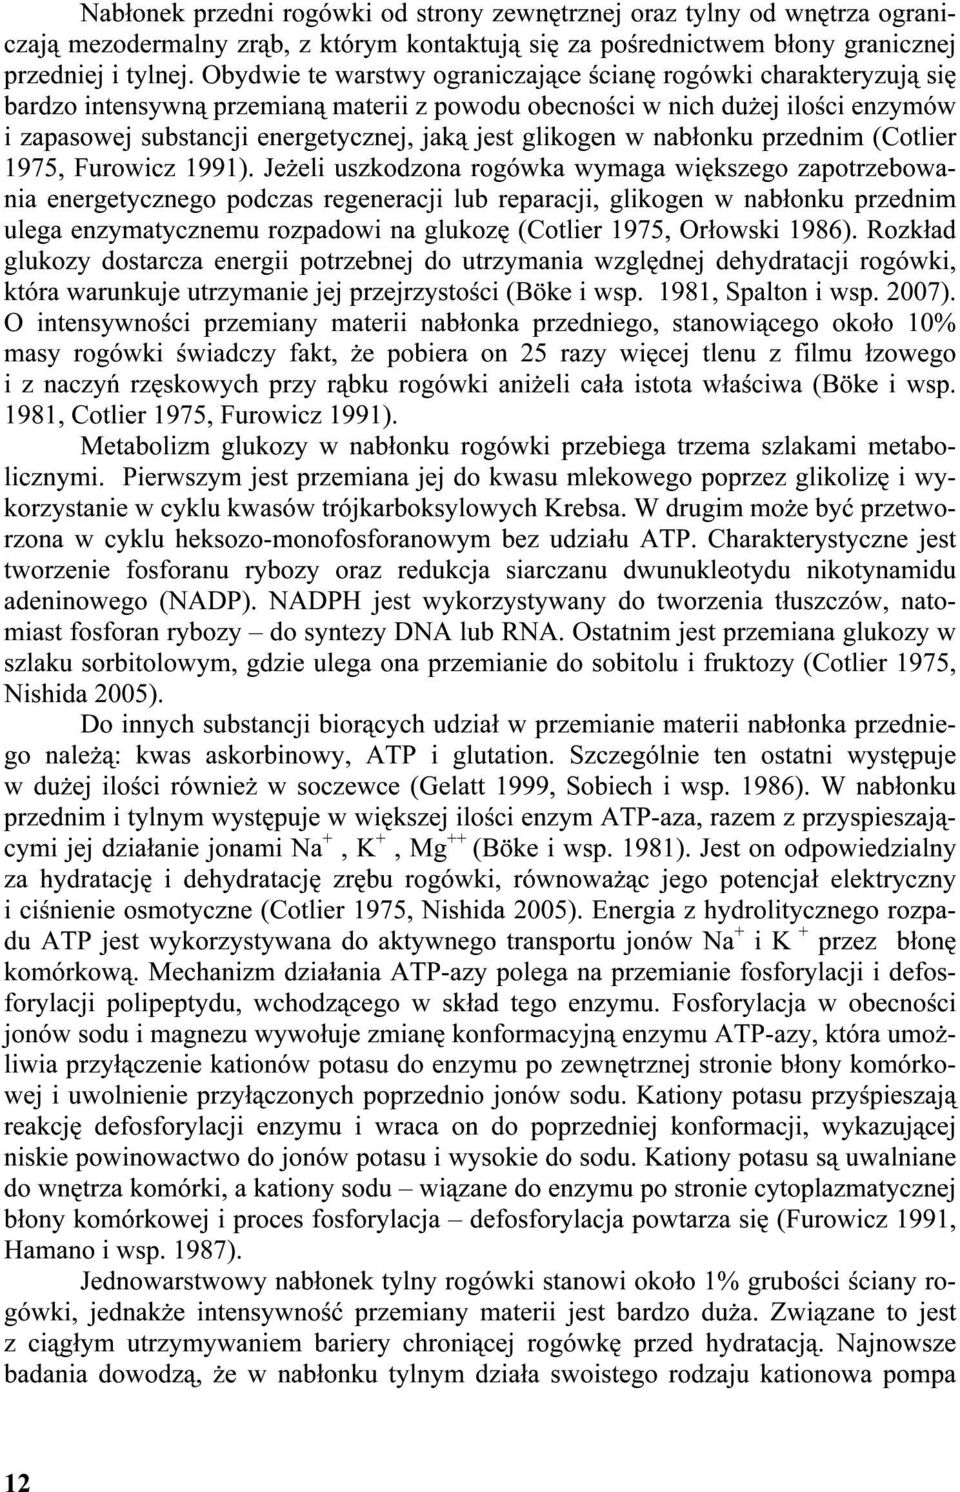 glikogen w nabłonku przednim (Cotlier 1975, Furowicz 1991).